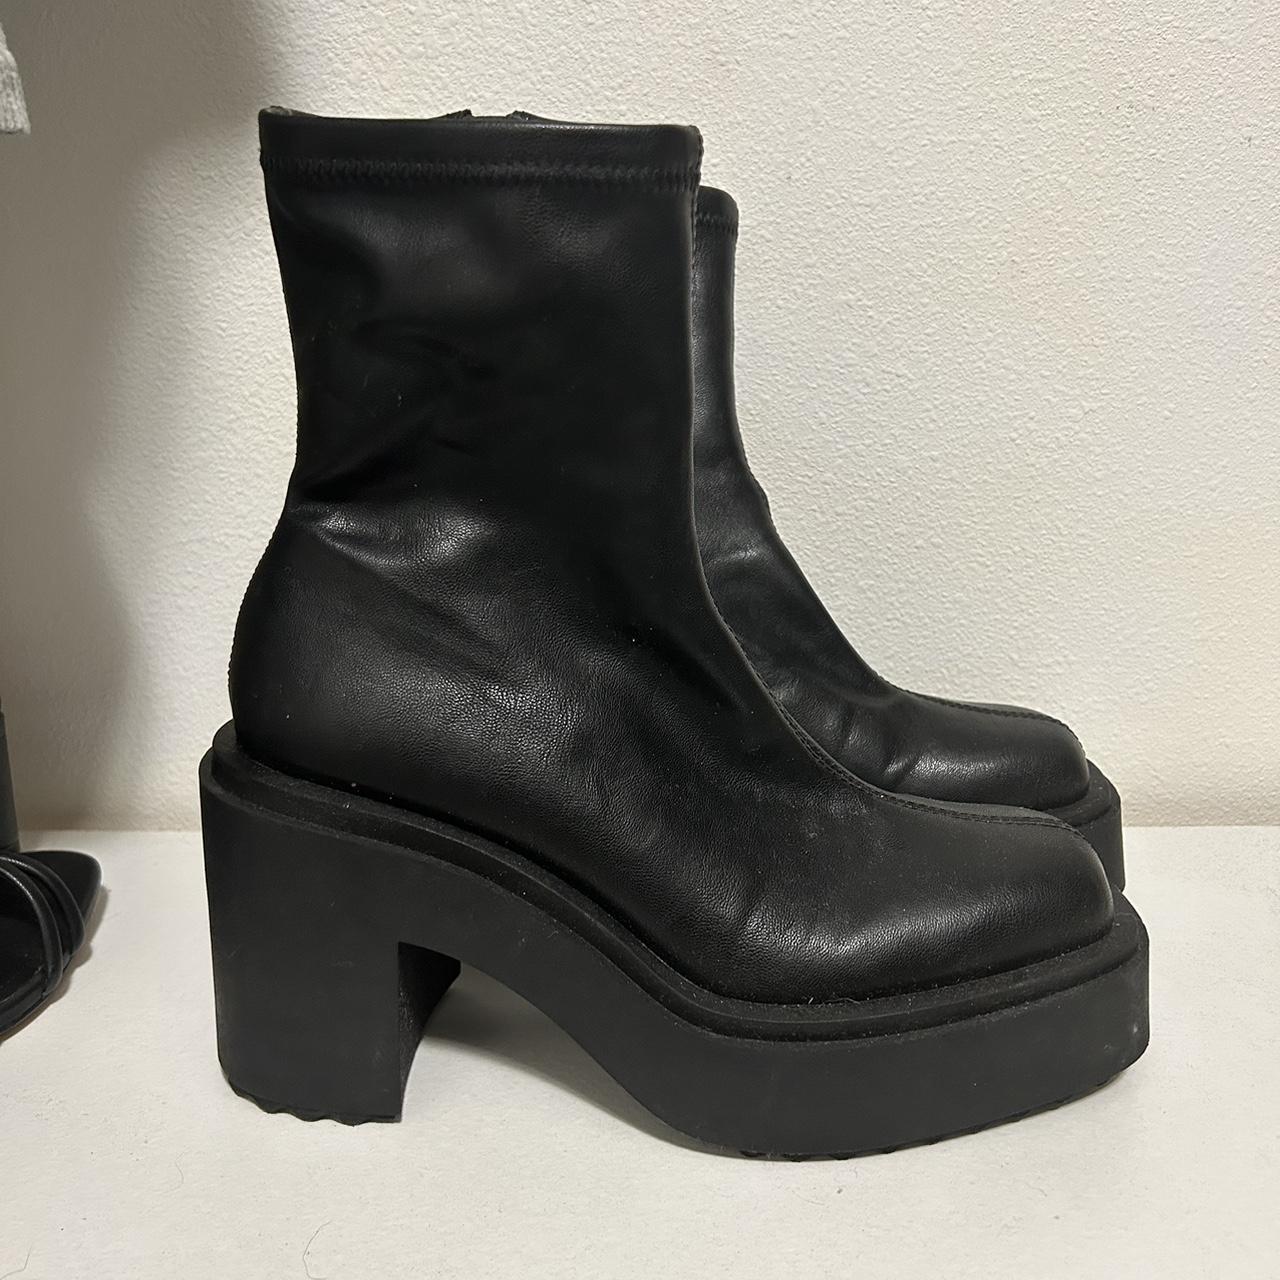 Black platform boots - Depop